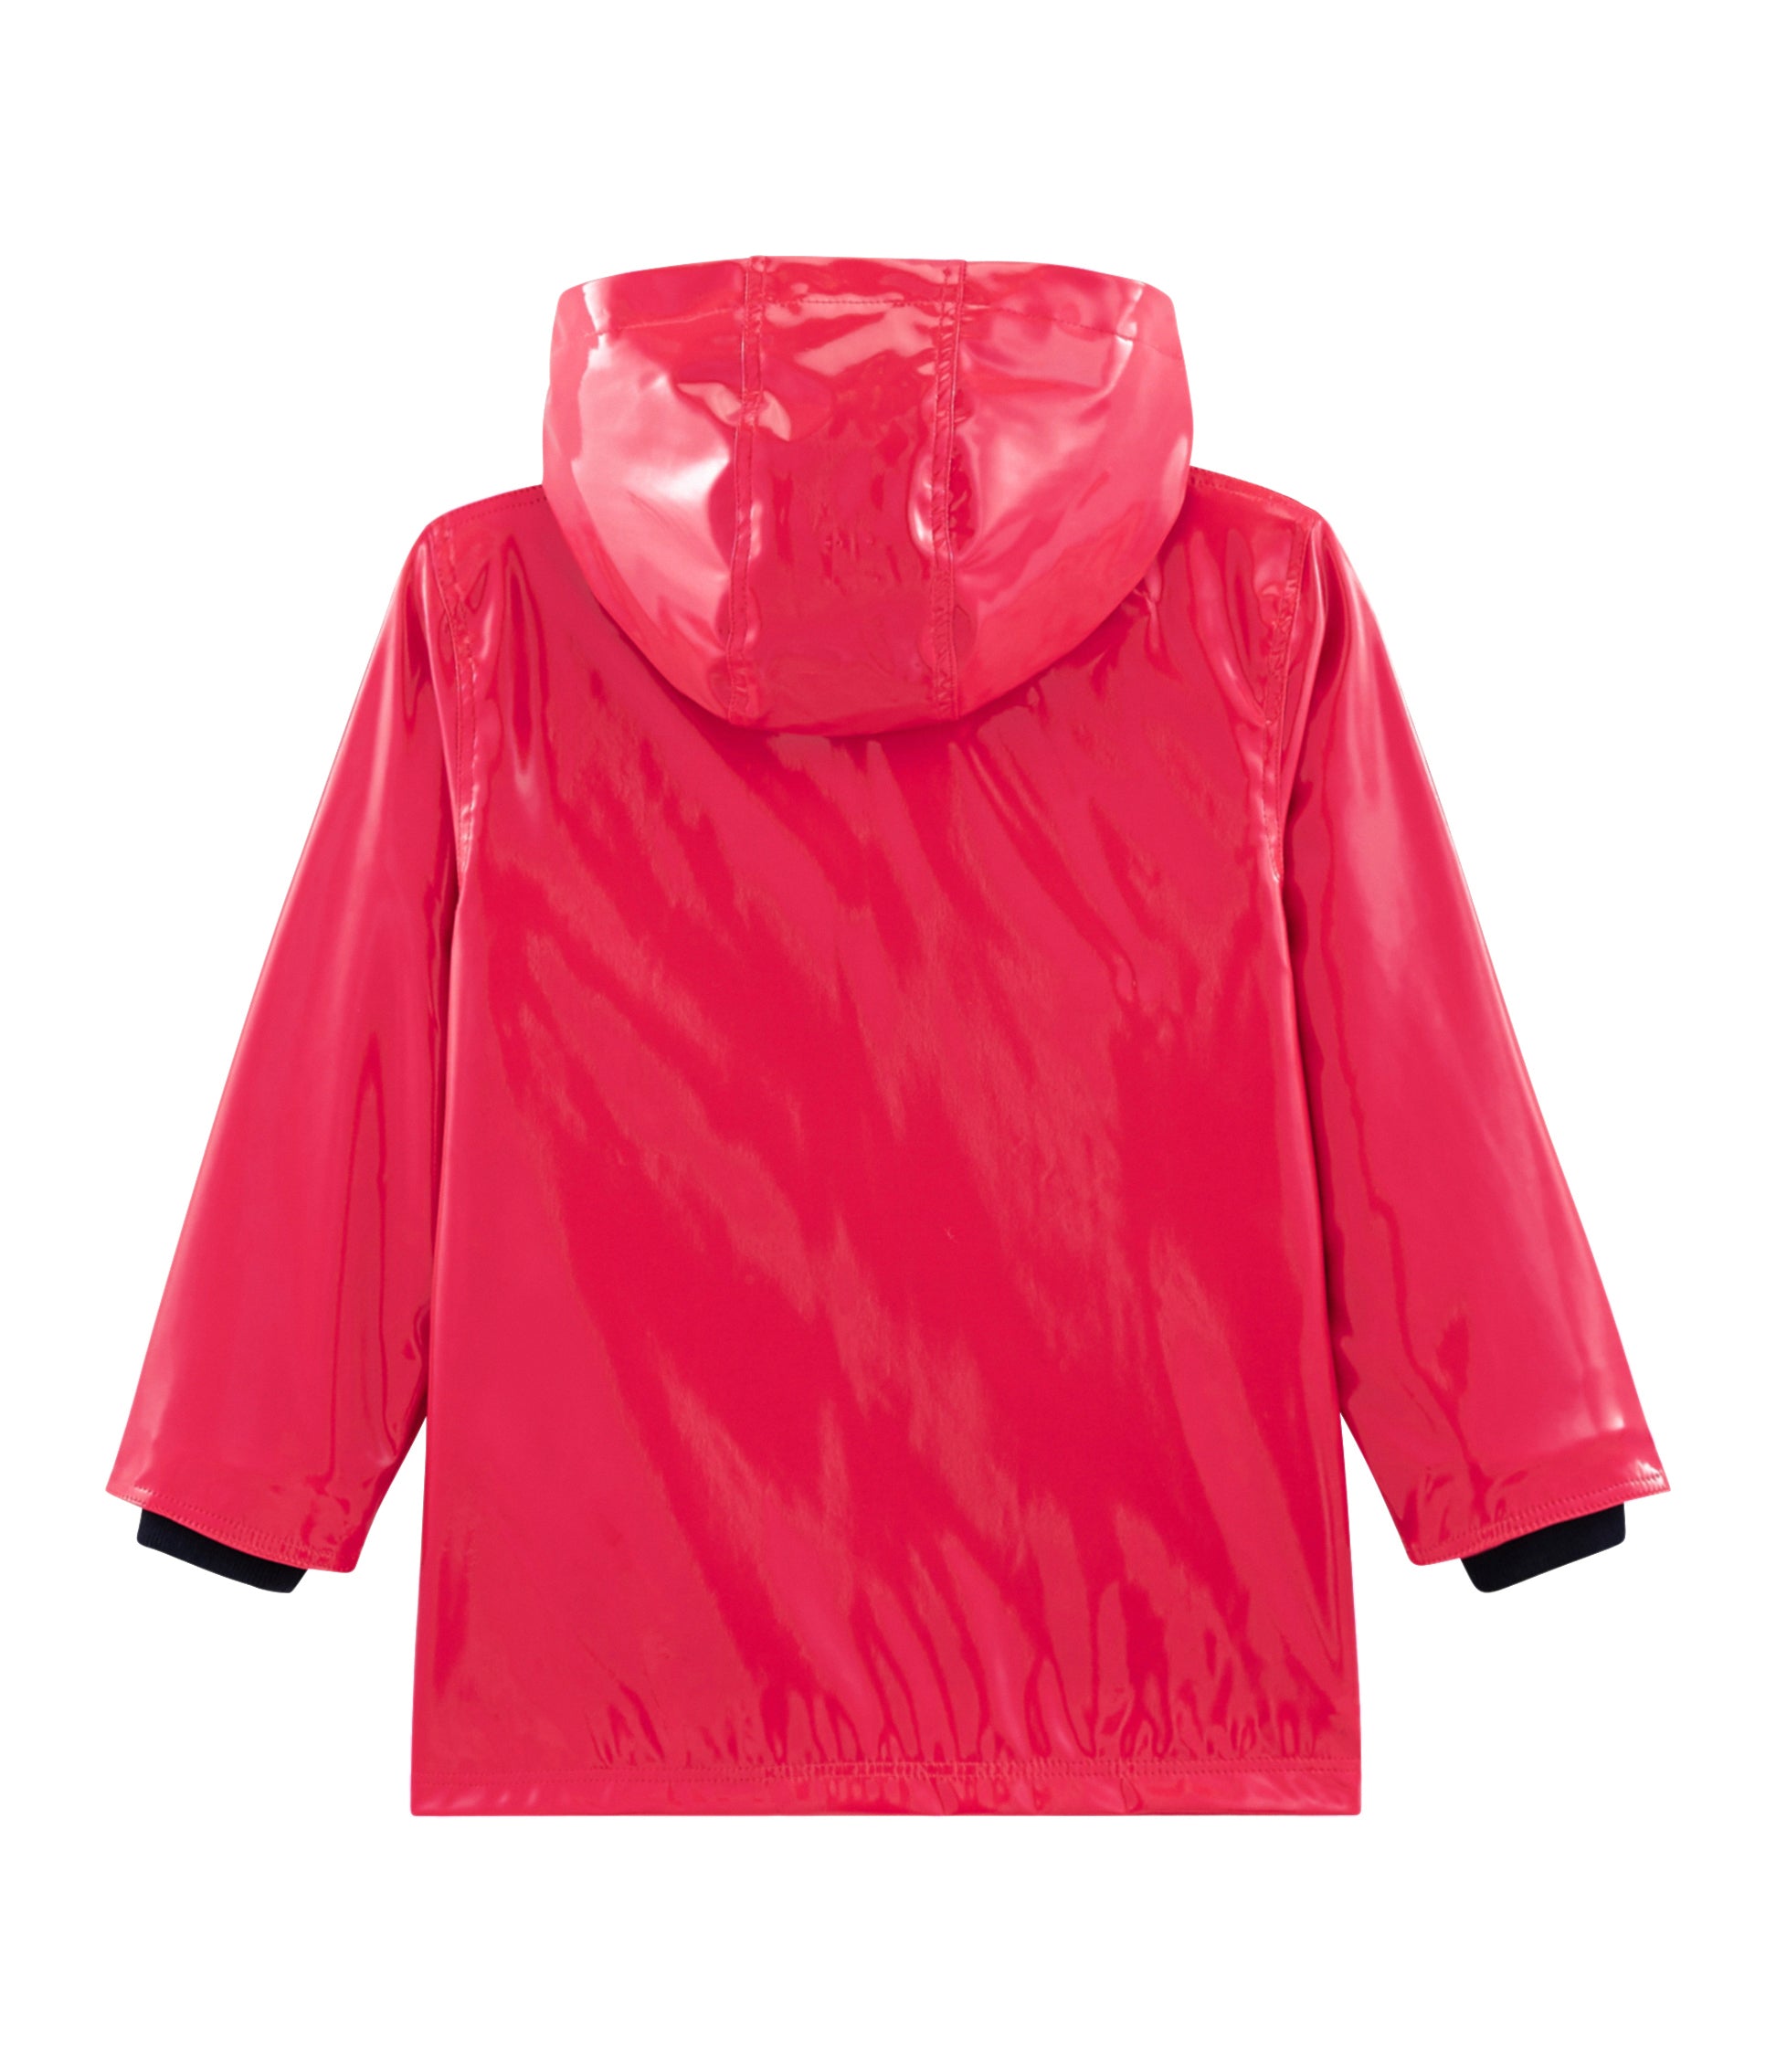 Girls Red Hooded Coat